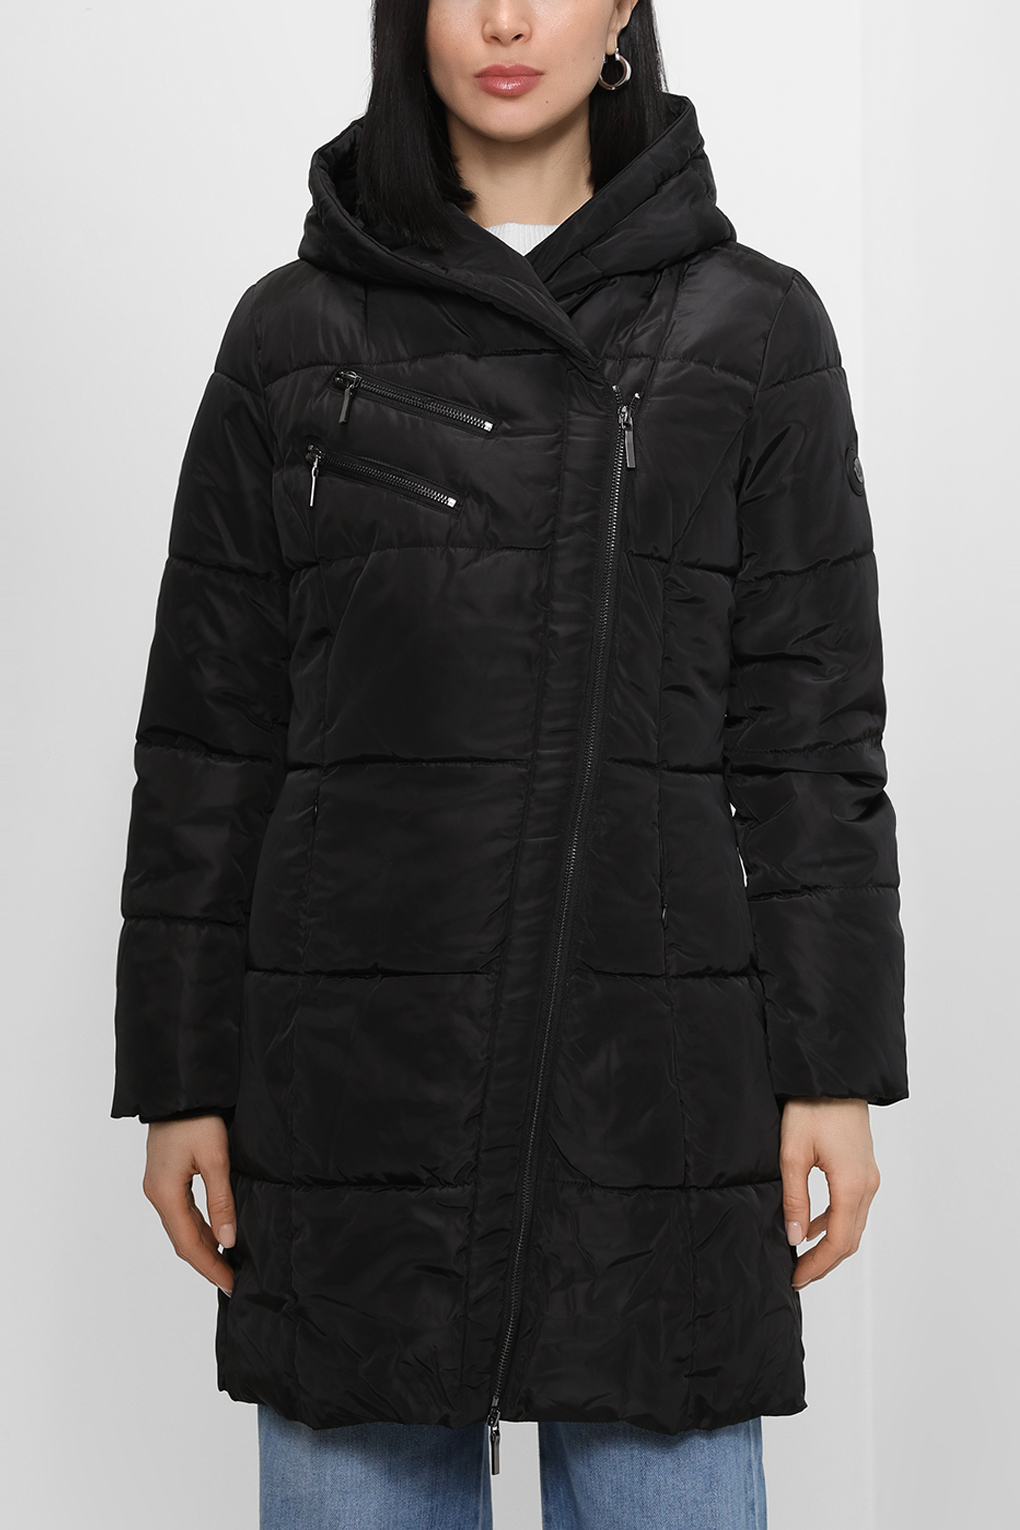 Куртка женская Loft LF2030285 черная L